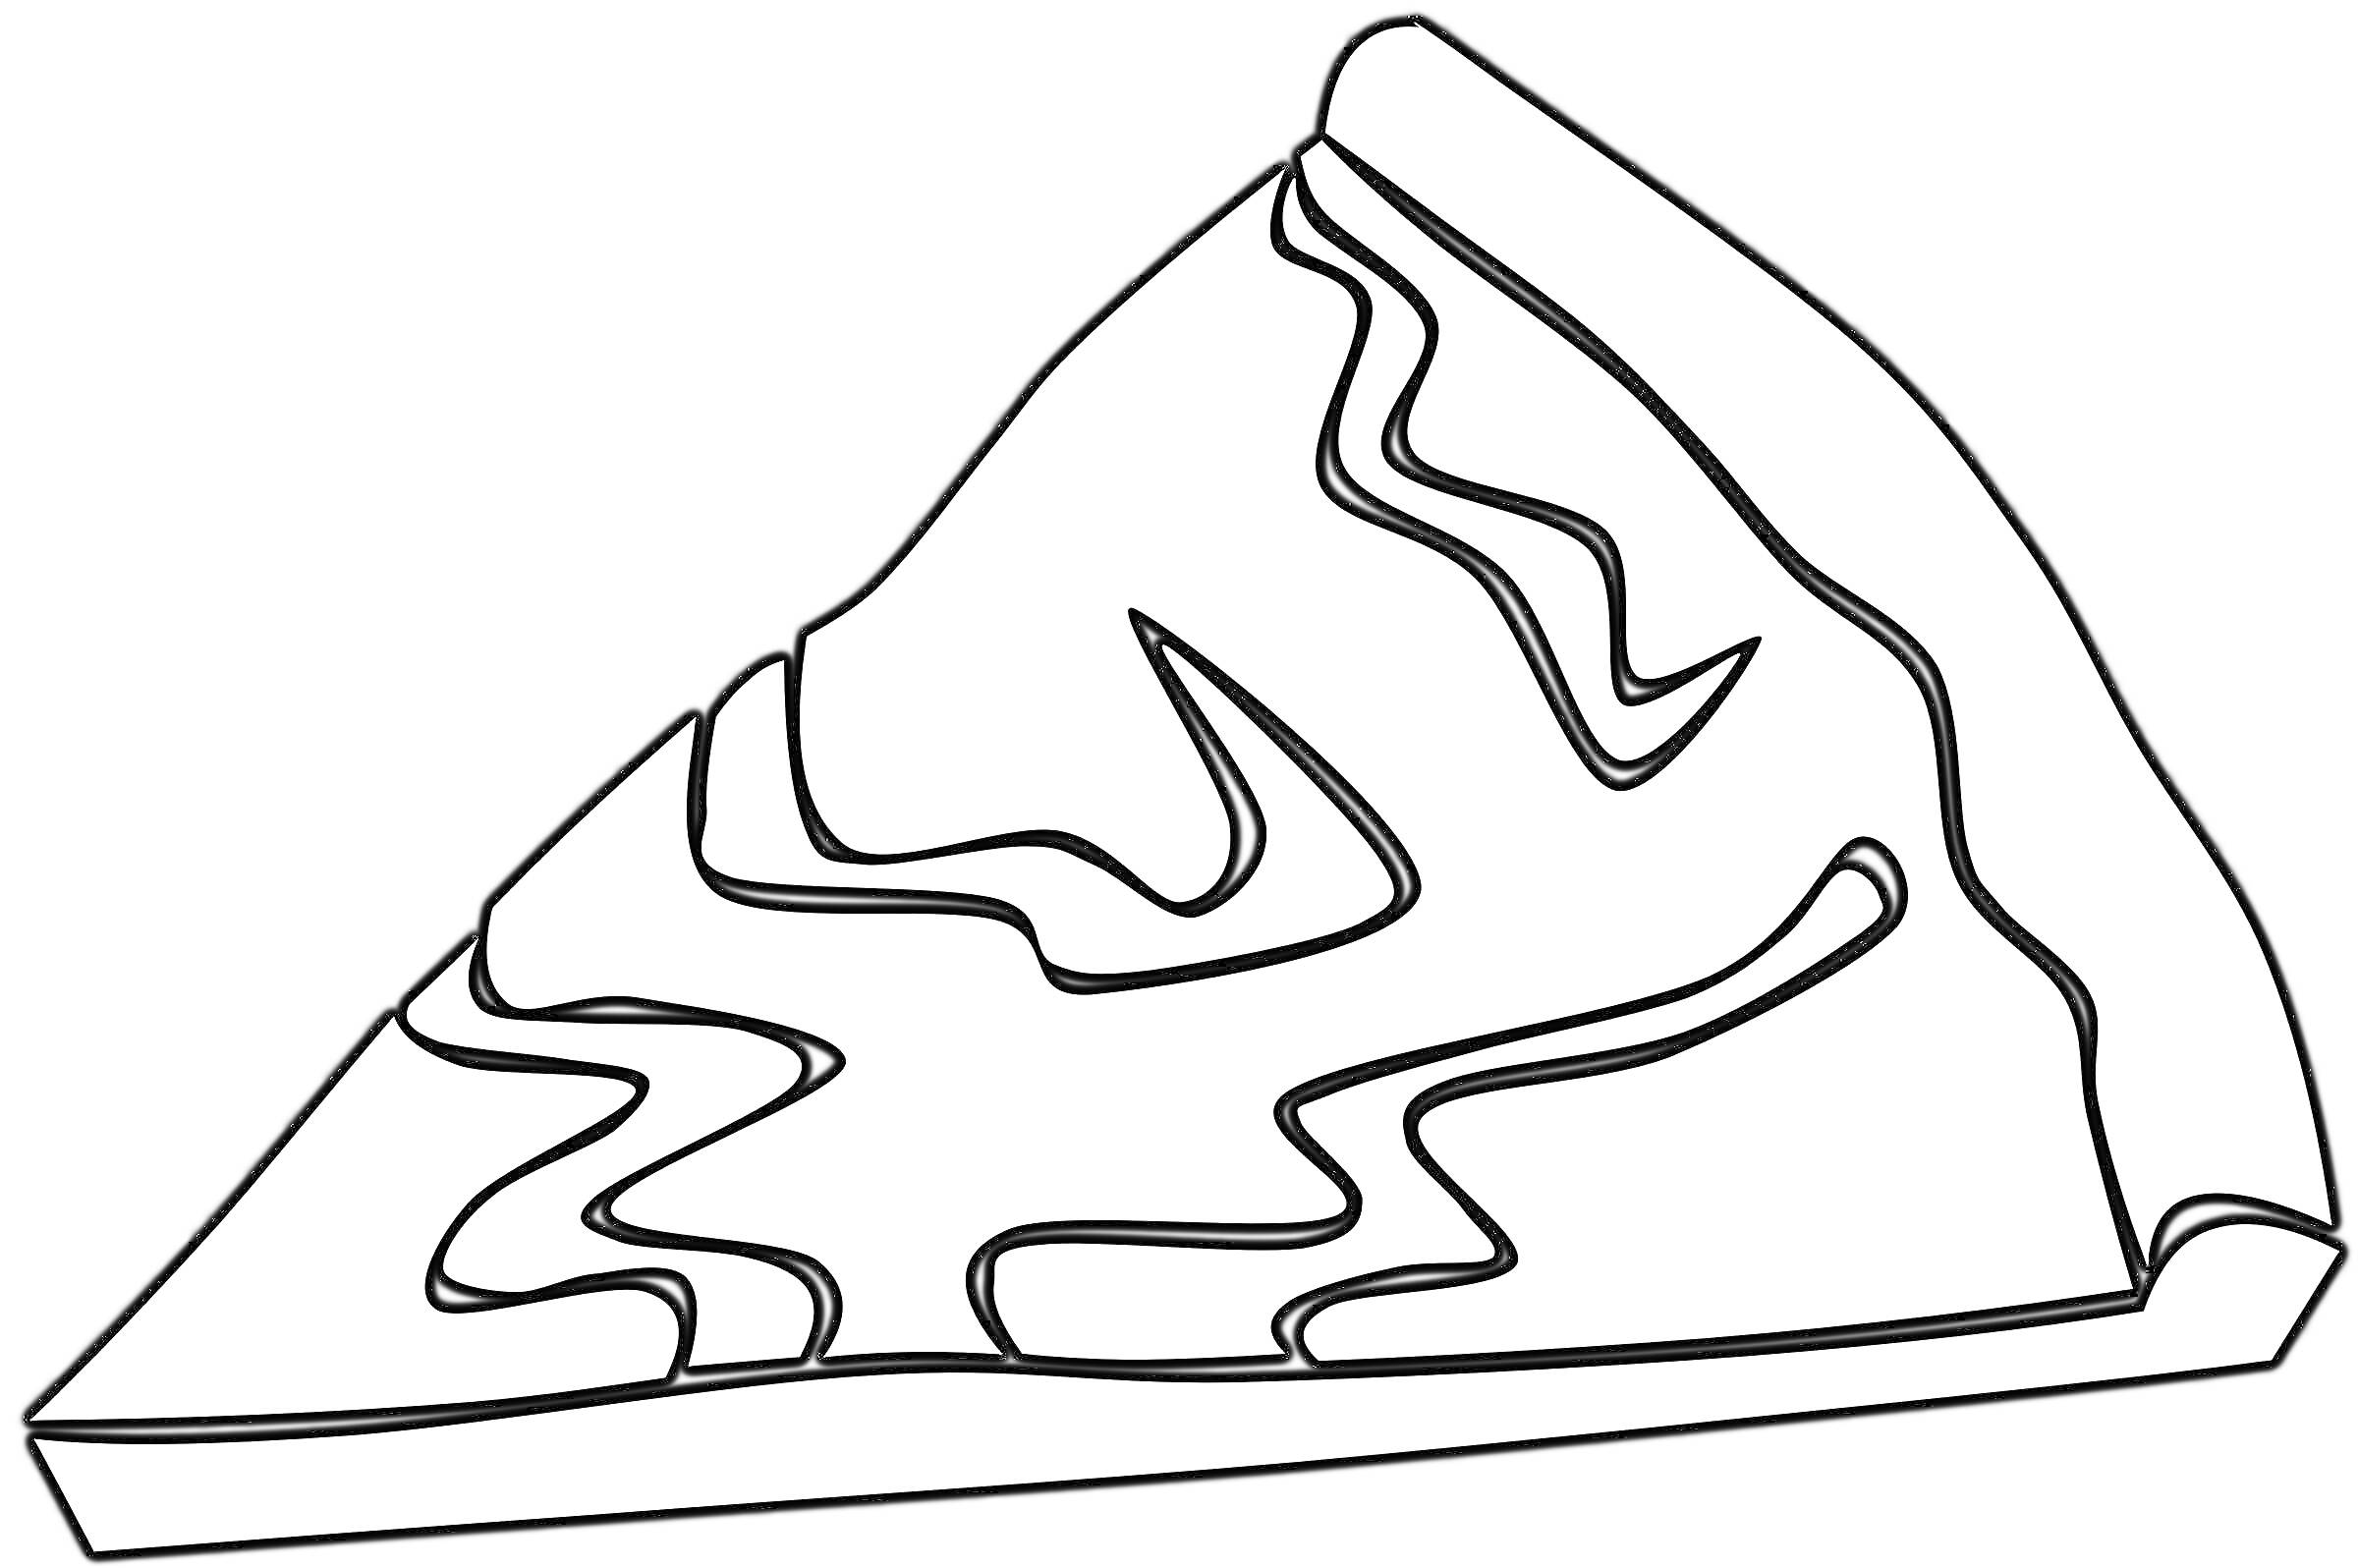 Раскраска Кусок пиццы с волнистыми узорами на поверхности